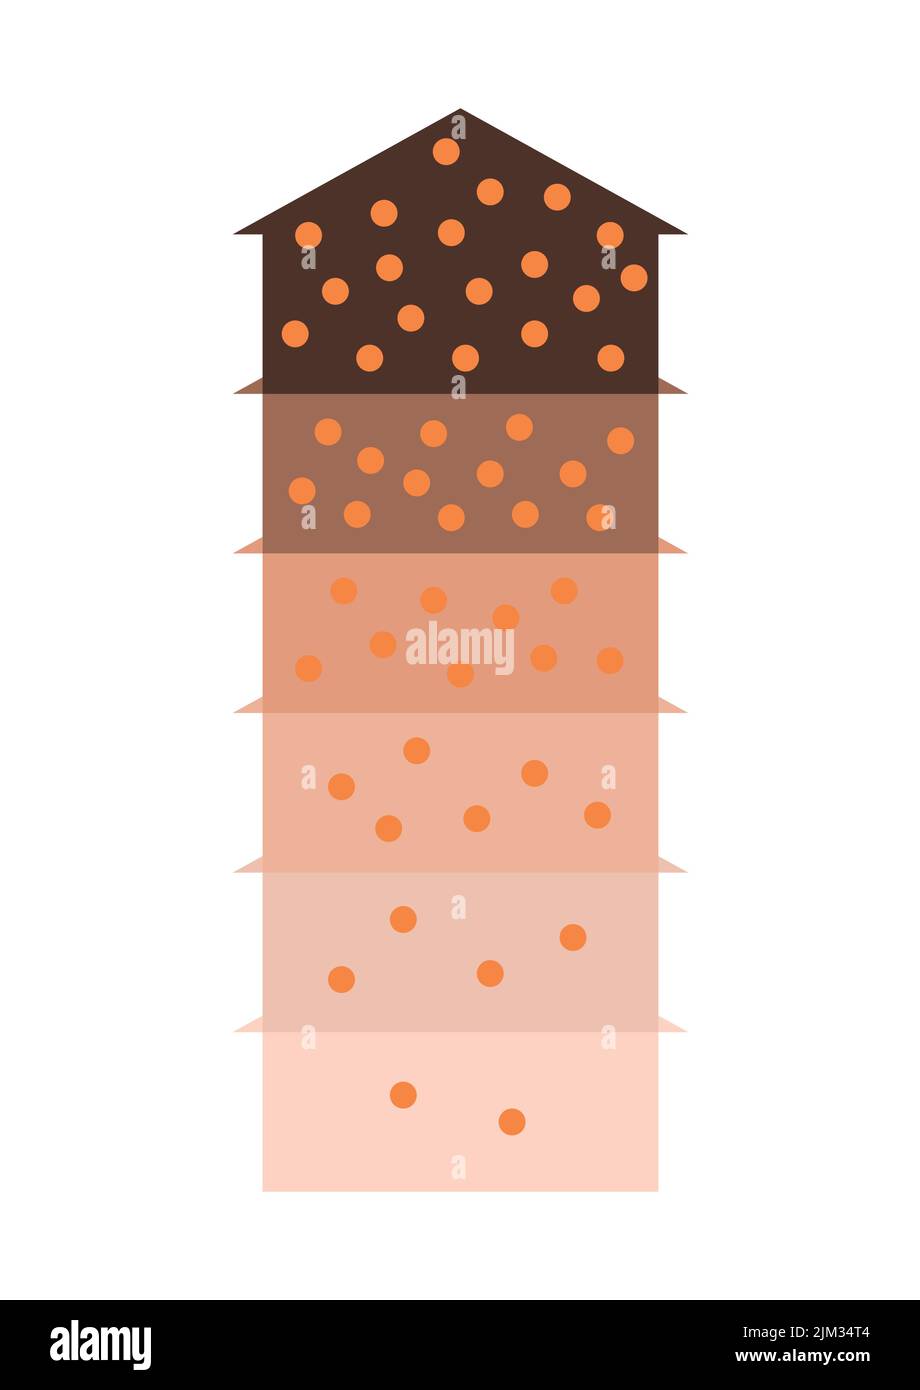 Infografica sulla concentrazione di cellule melaniniche della pelle o dei capelli. Illustrazione Vettoriale